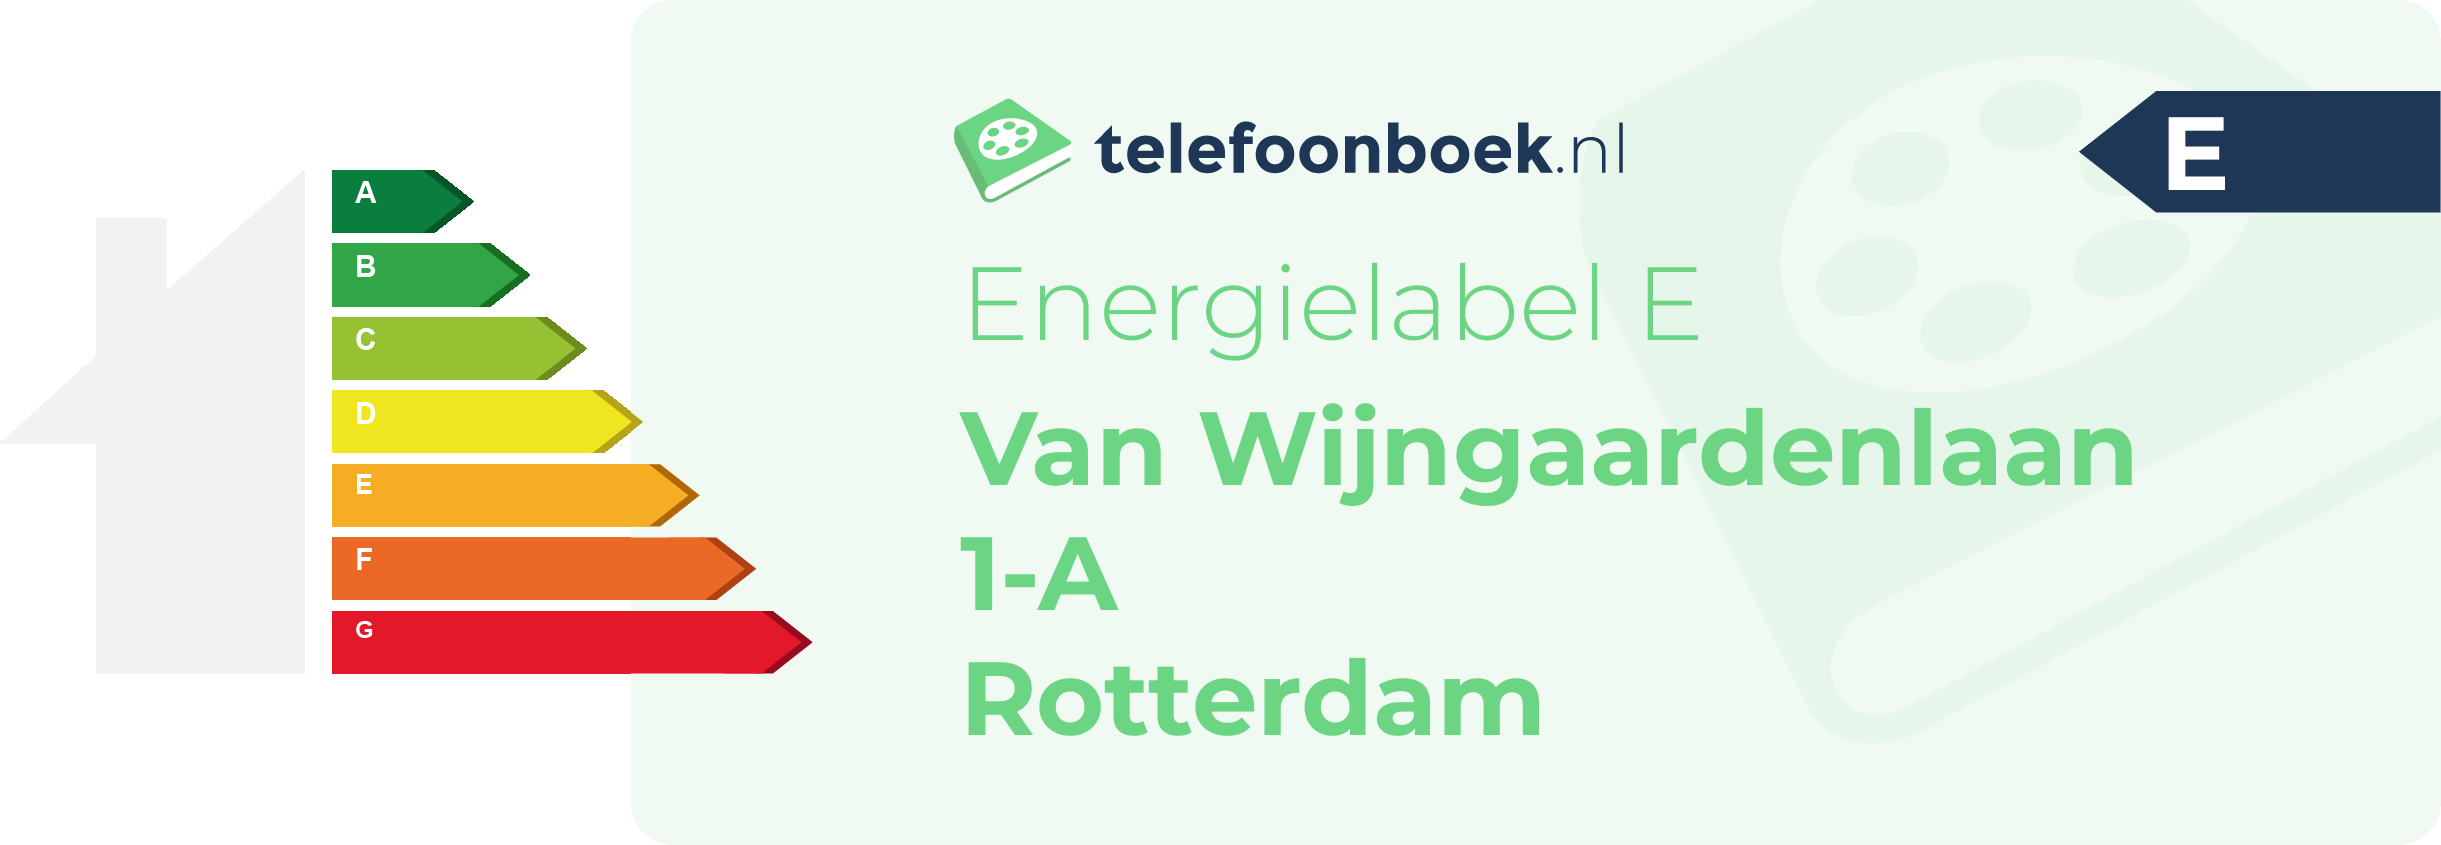 Energielabel Van Wijngaardenlaan 1-A Rotterdam